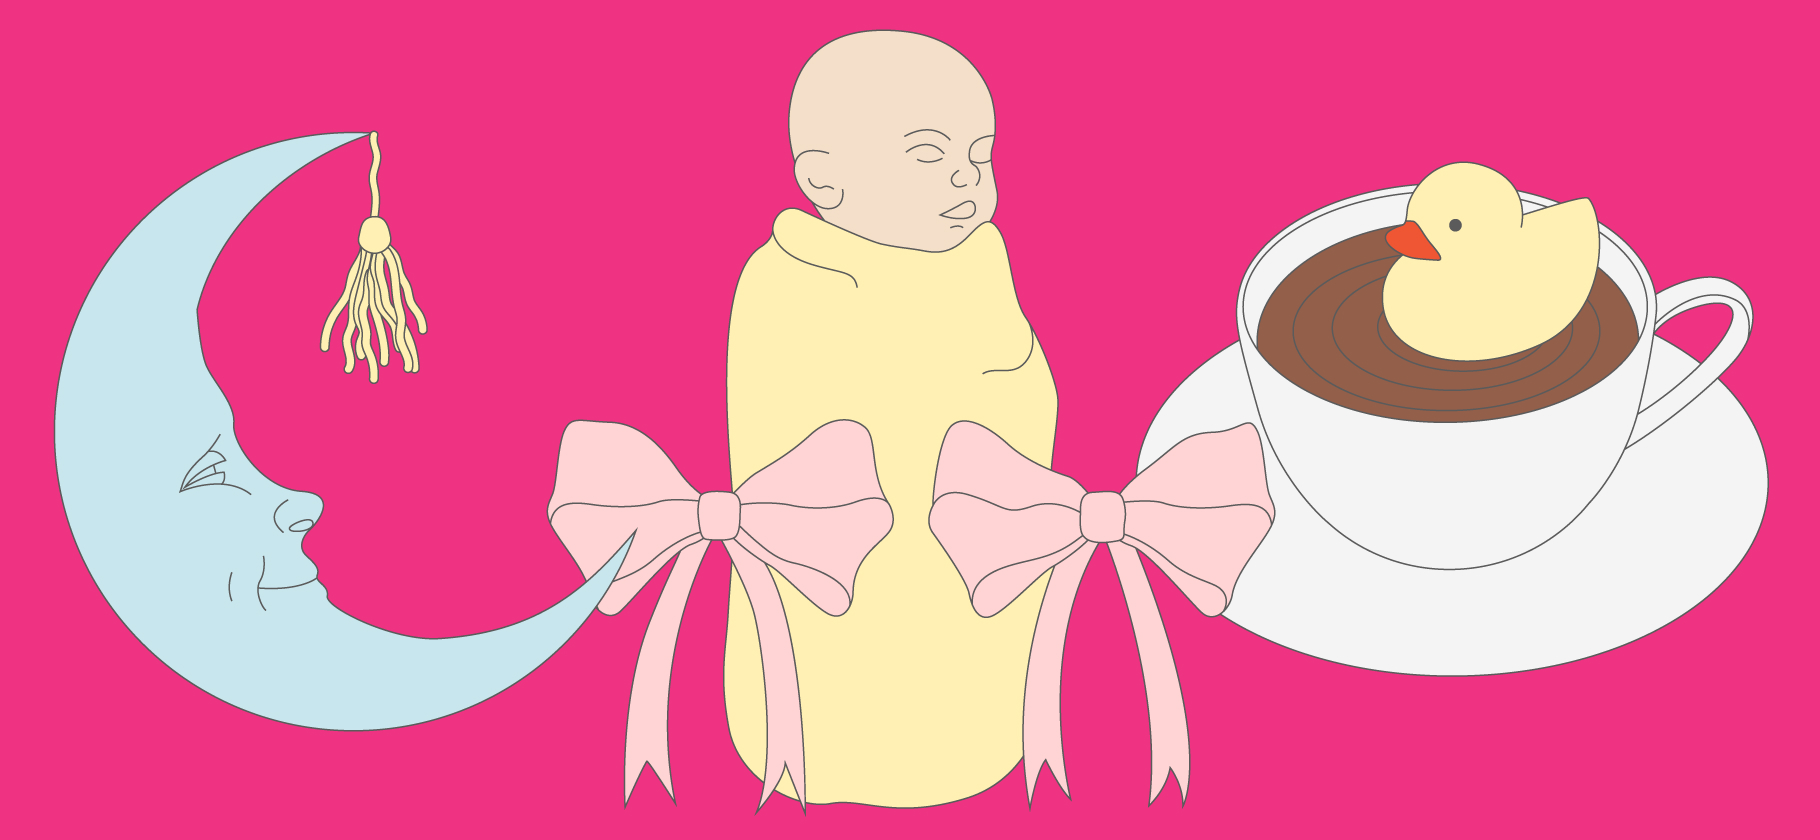 7 убеждений о труд­нос­тях мате­ринства, с кото­рыми мне хо­чется поспорить